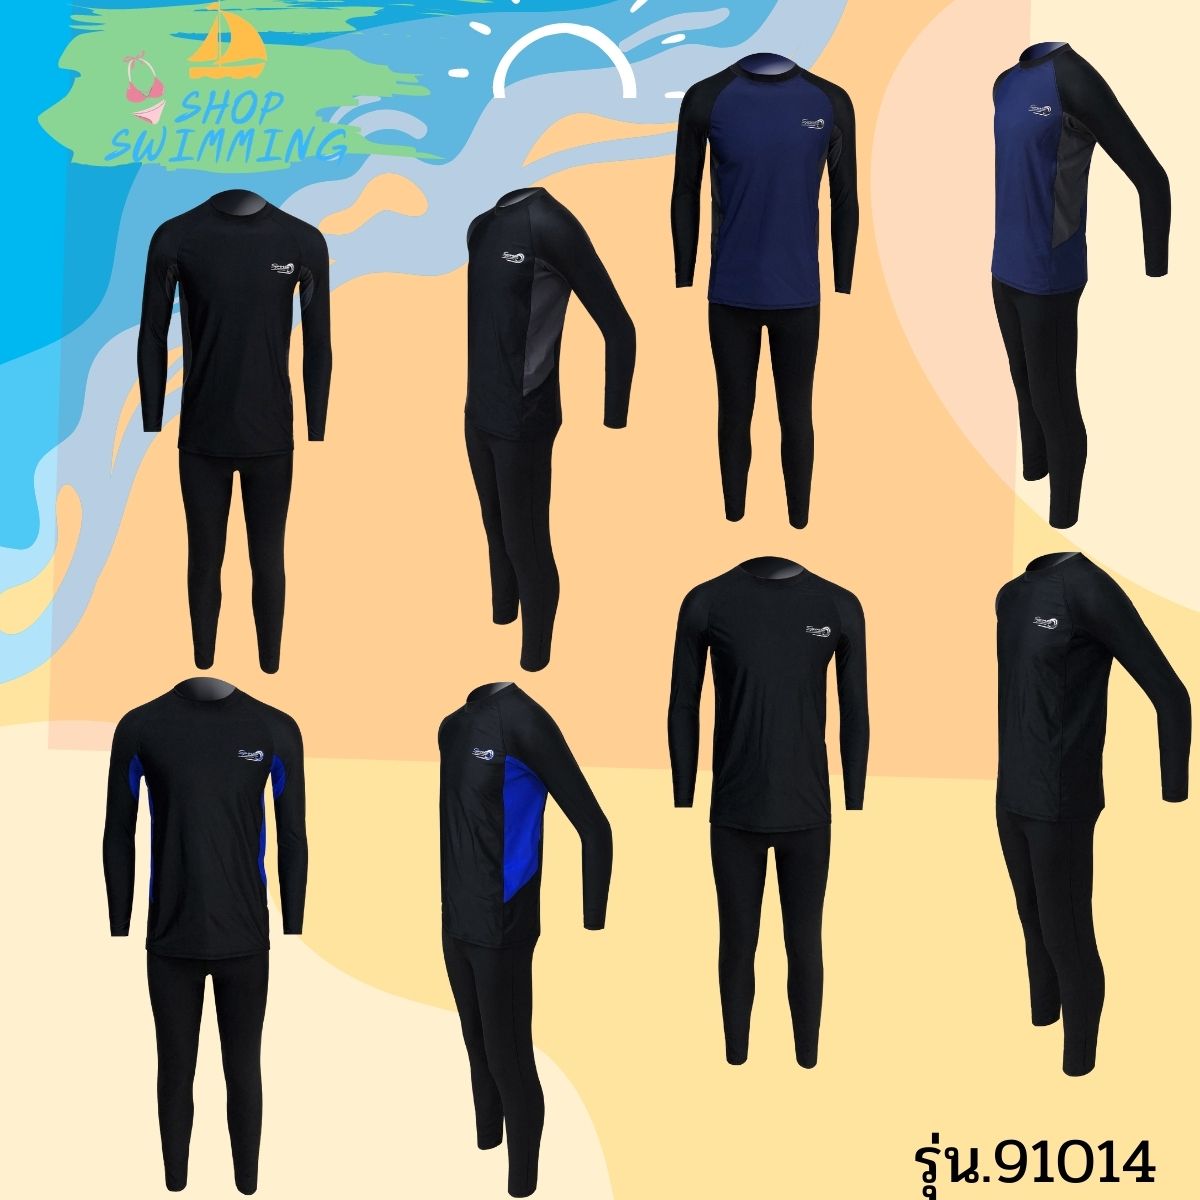 ชุดว่ายน้ำผู้ชาย เซต 2 ชิ้น มีซับด้นใน ทรง sport เสื้อแขนยาว-กางเกงขายาว รุ่น 91014